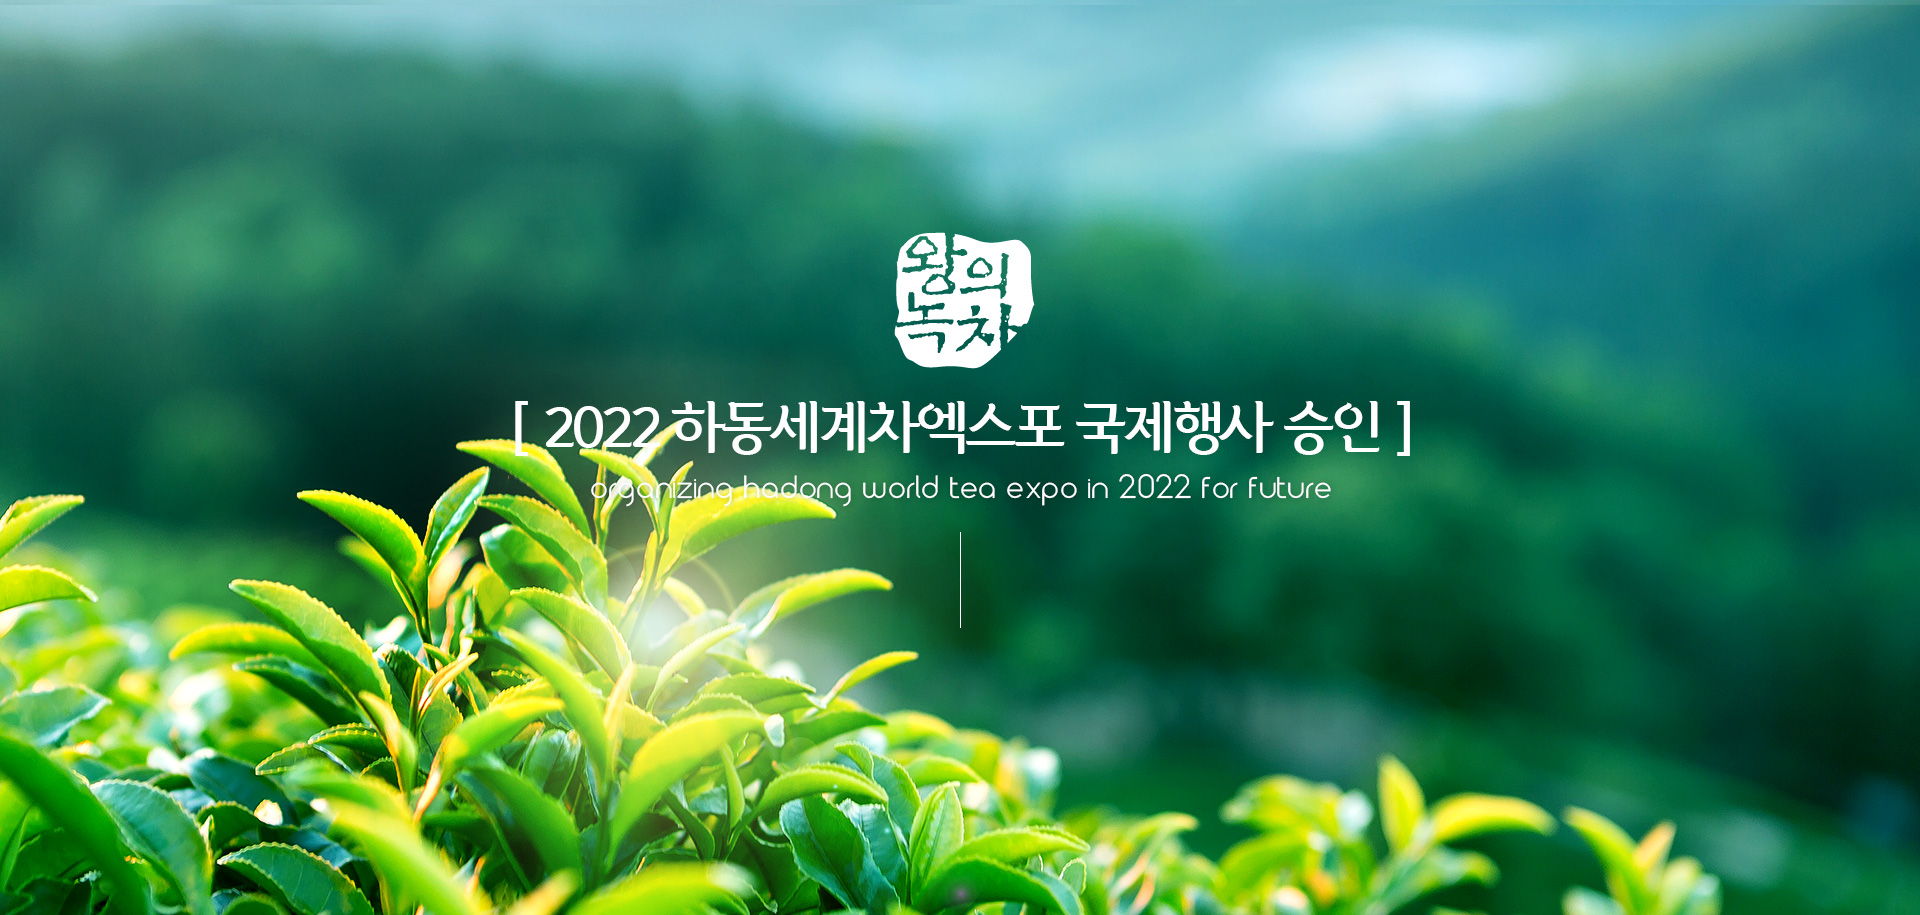 왕의녹차. [ 2022하동세계차엑스포 국제행사 승인 ] organizing Hadong world tea EXPO in 2022 for future 
